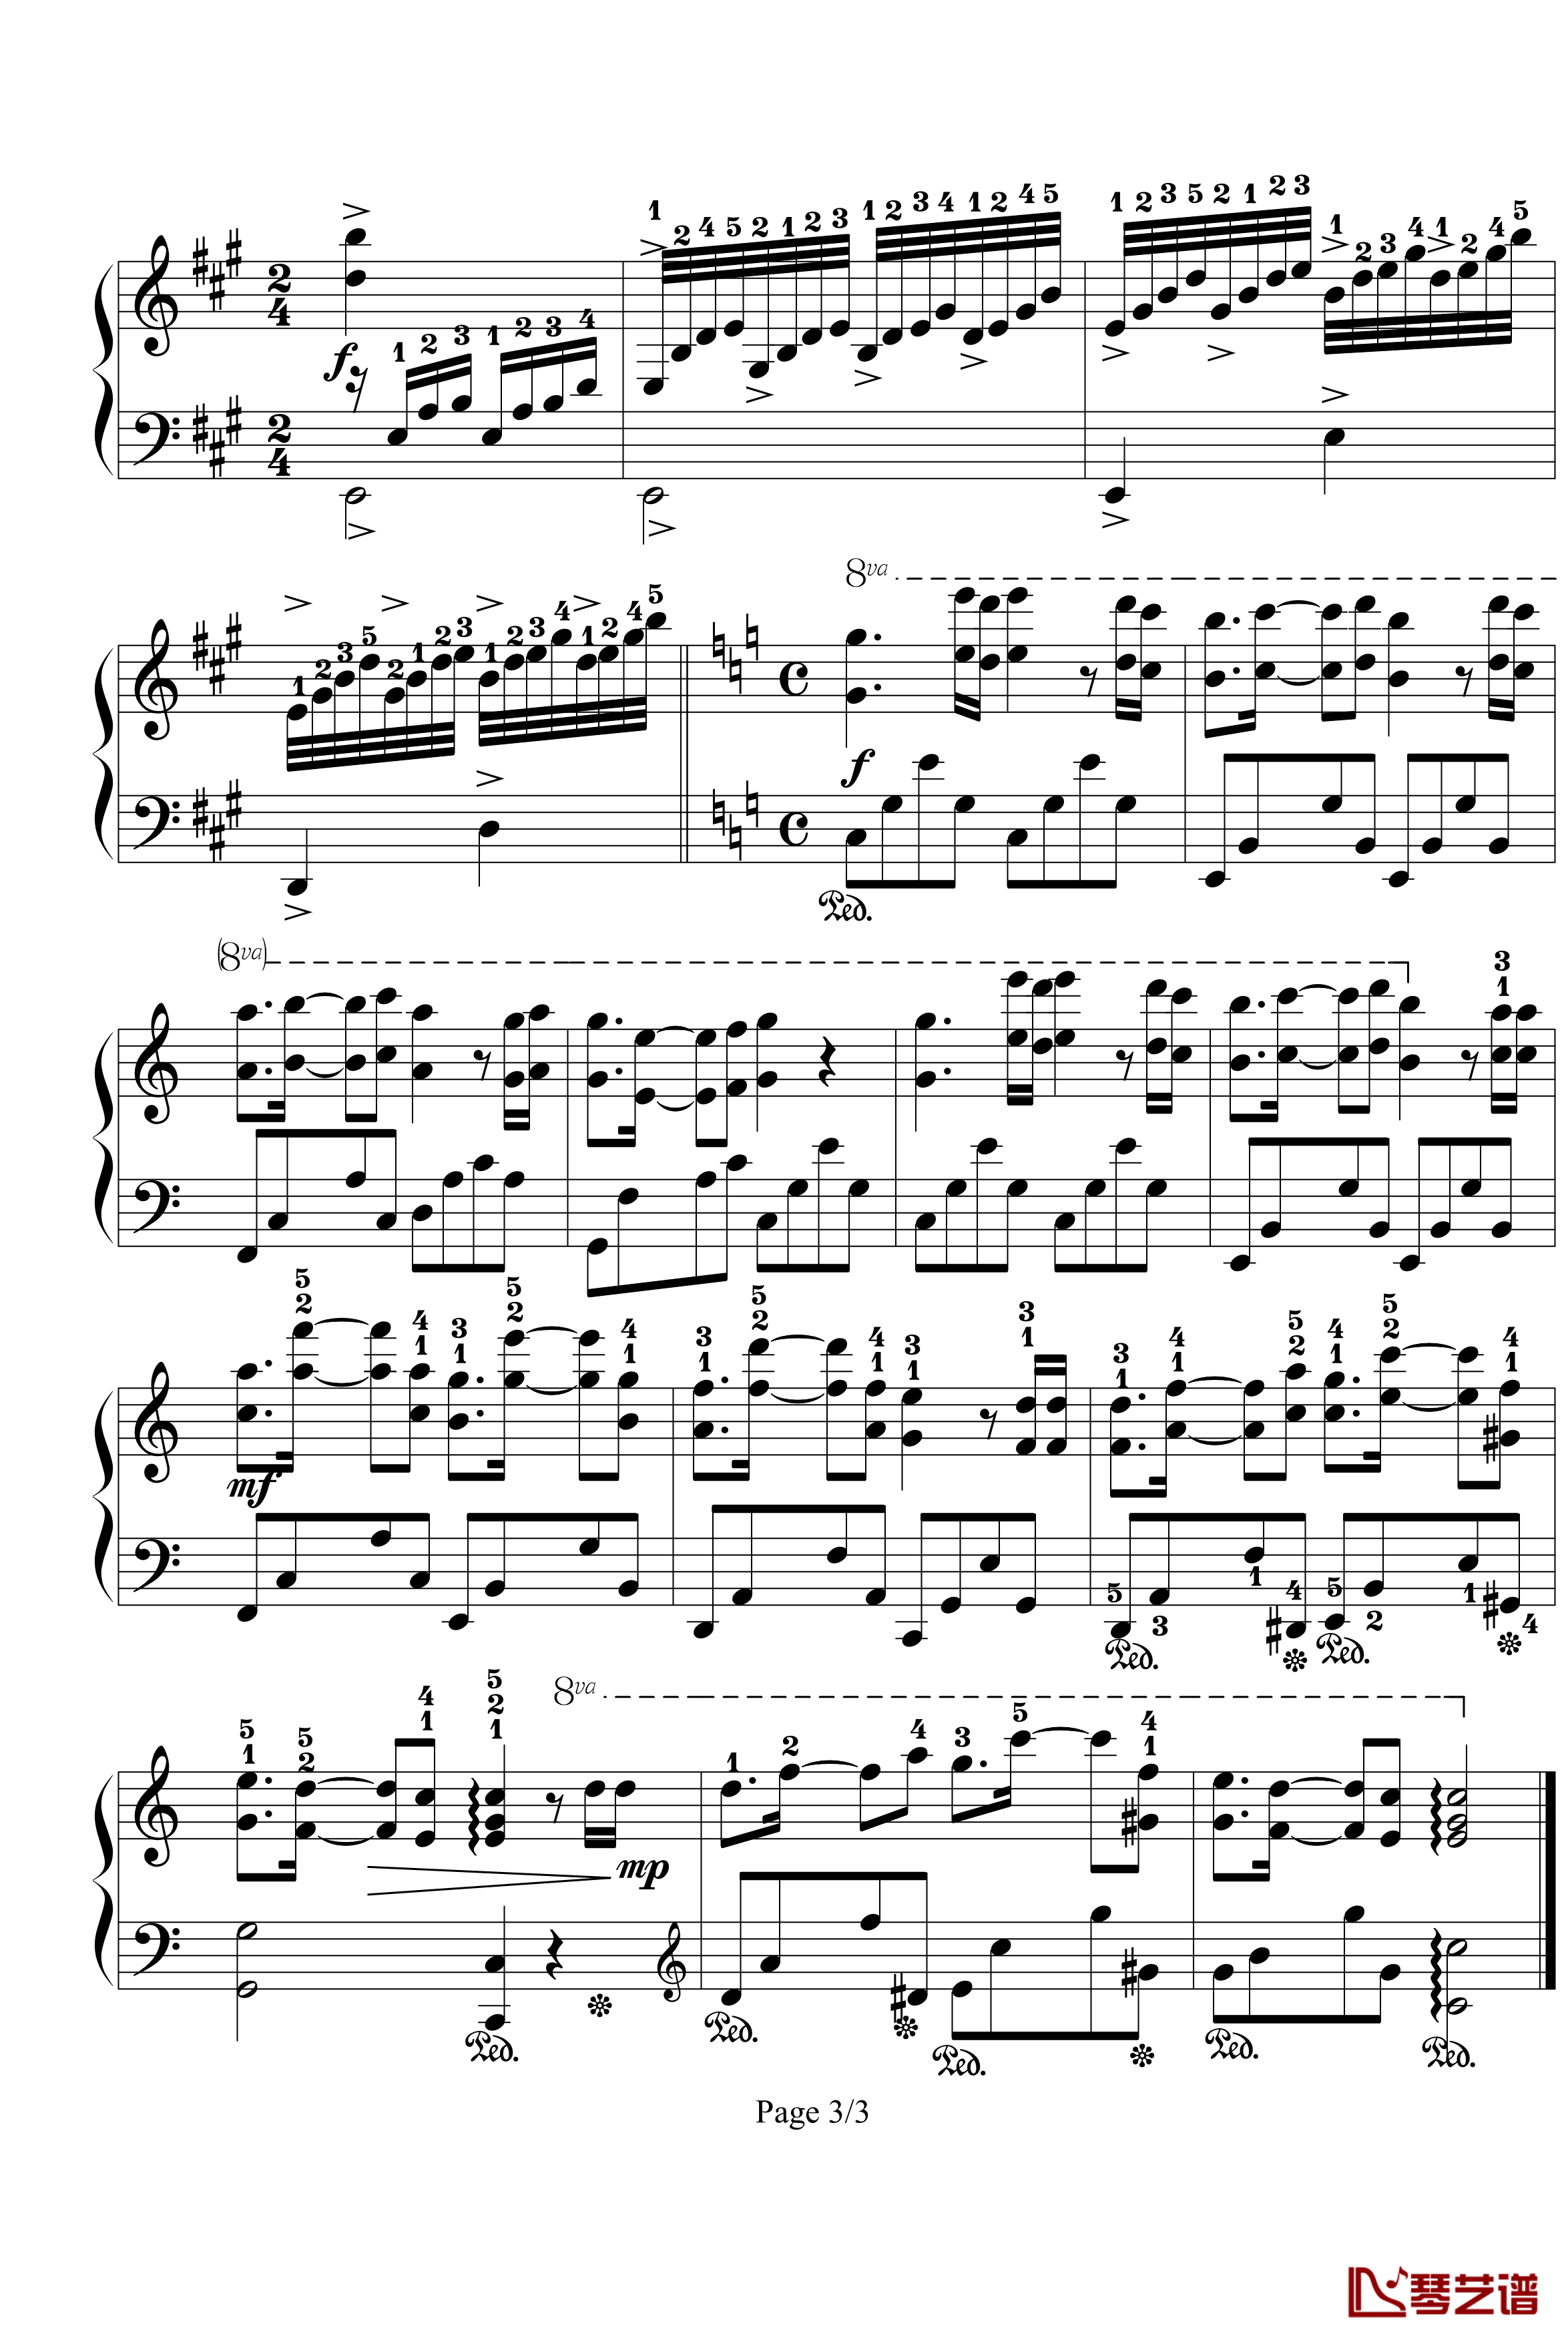 星星小夜曲钢琴谱-带指法-已删除-塞内维尔3